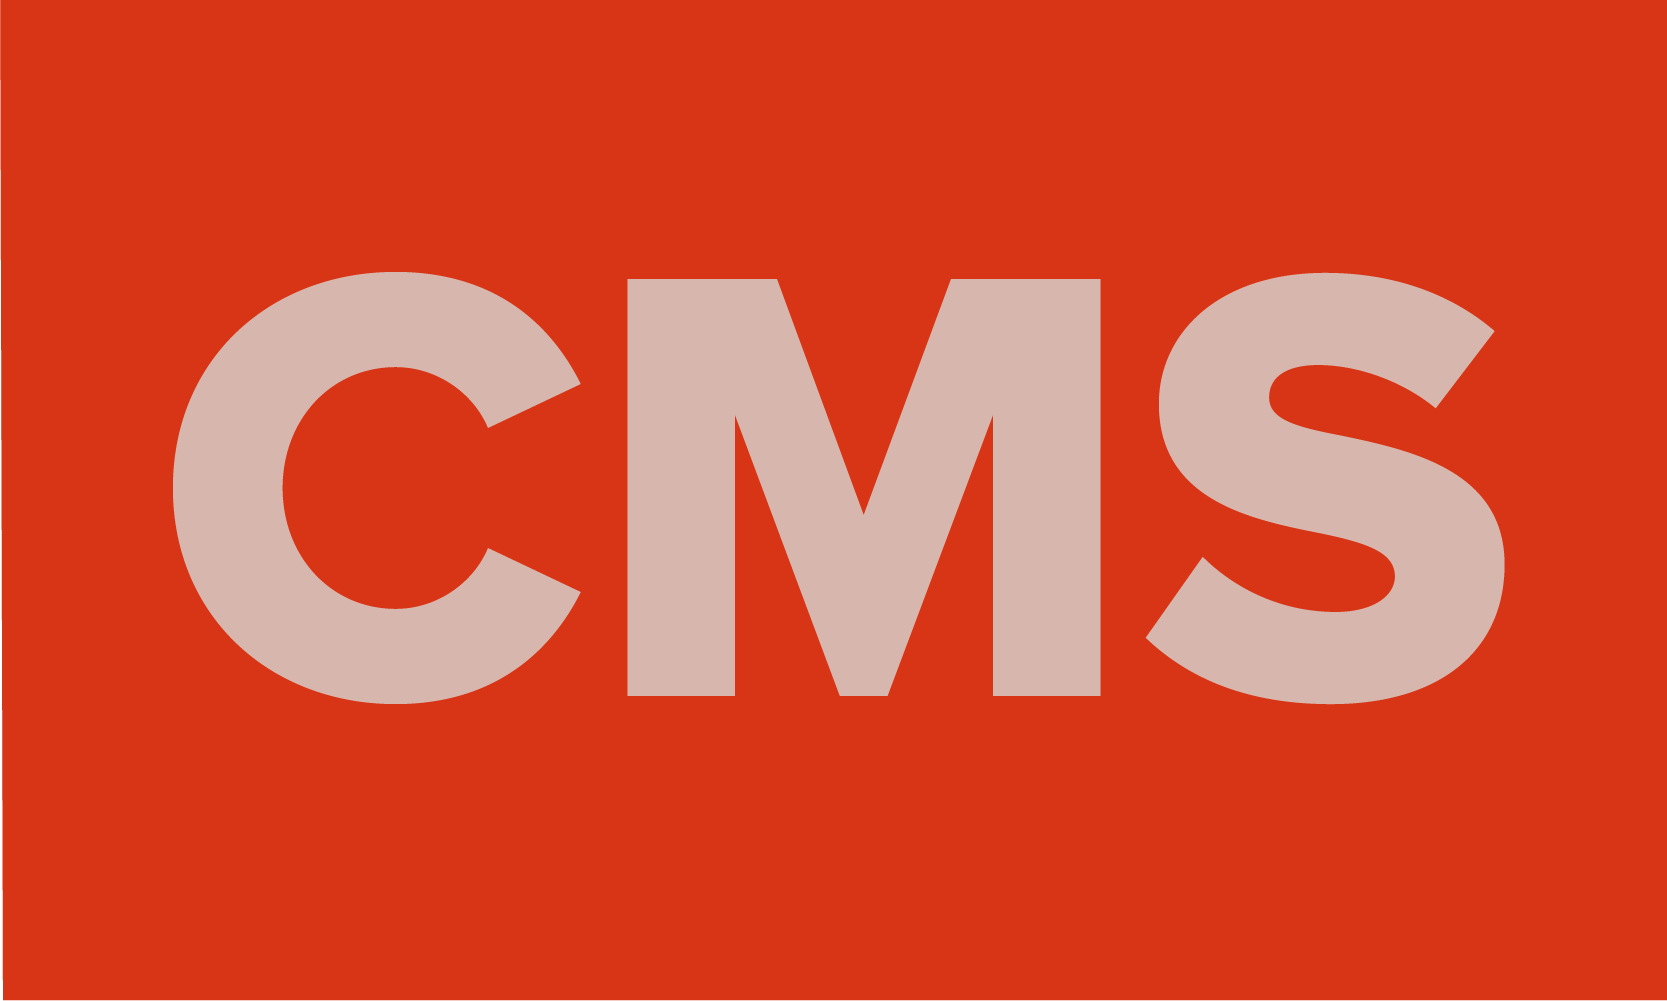 Dieses Bild enthält den Text "CMS" (Content Management System) und soll anschaulich für den Textbereich darunter sein.